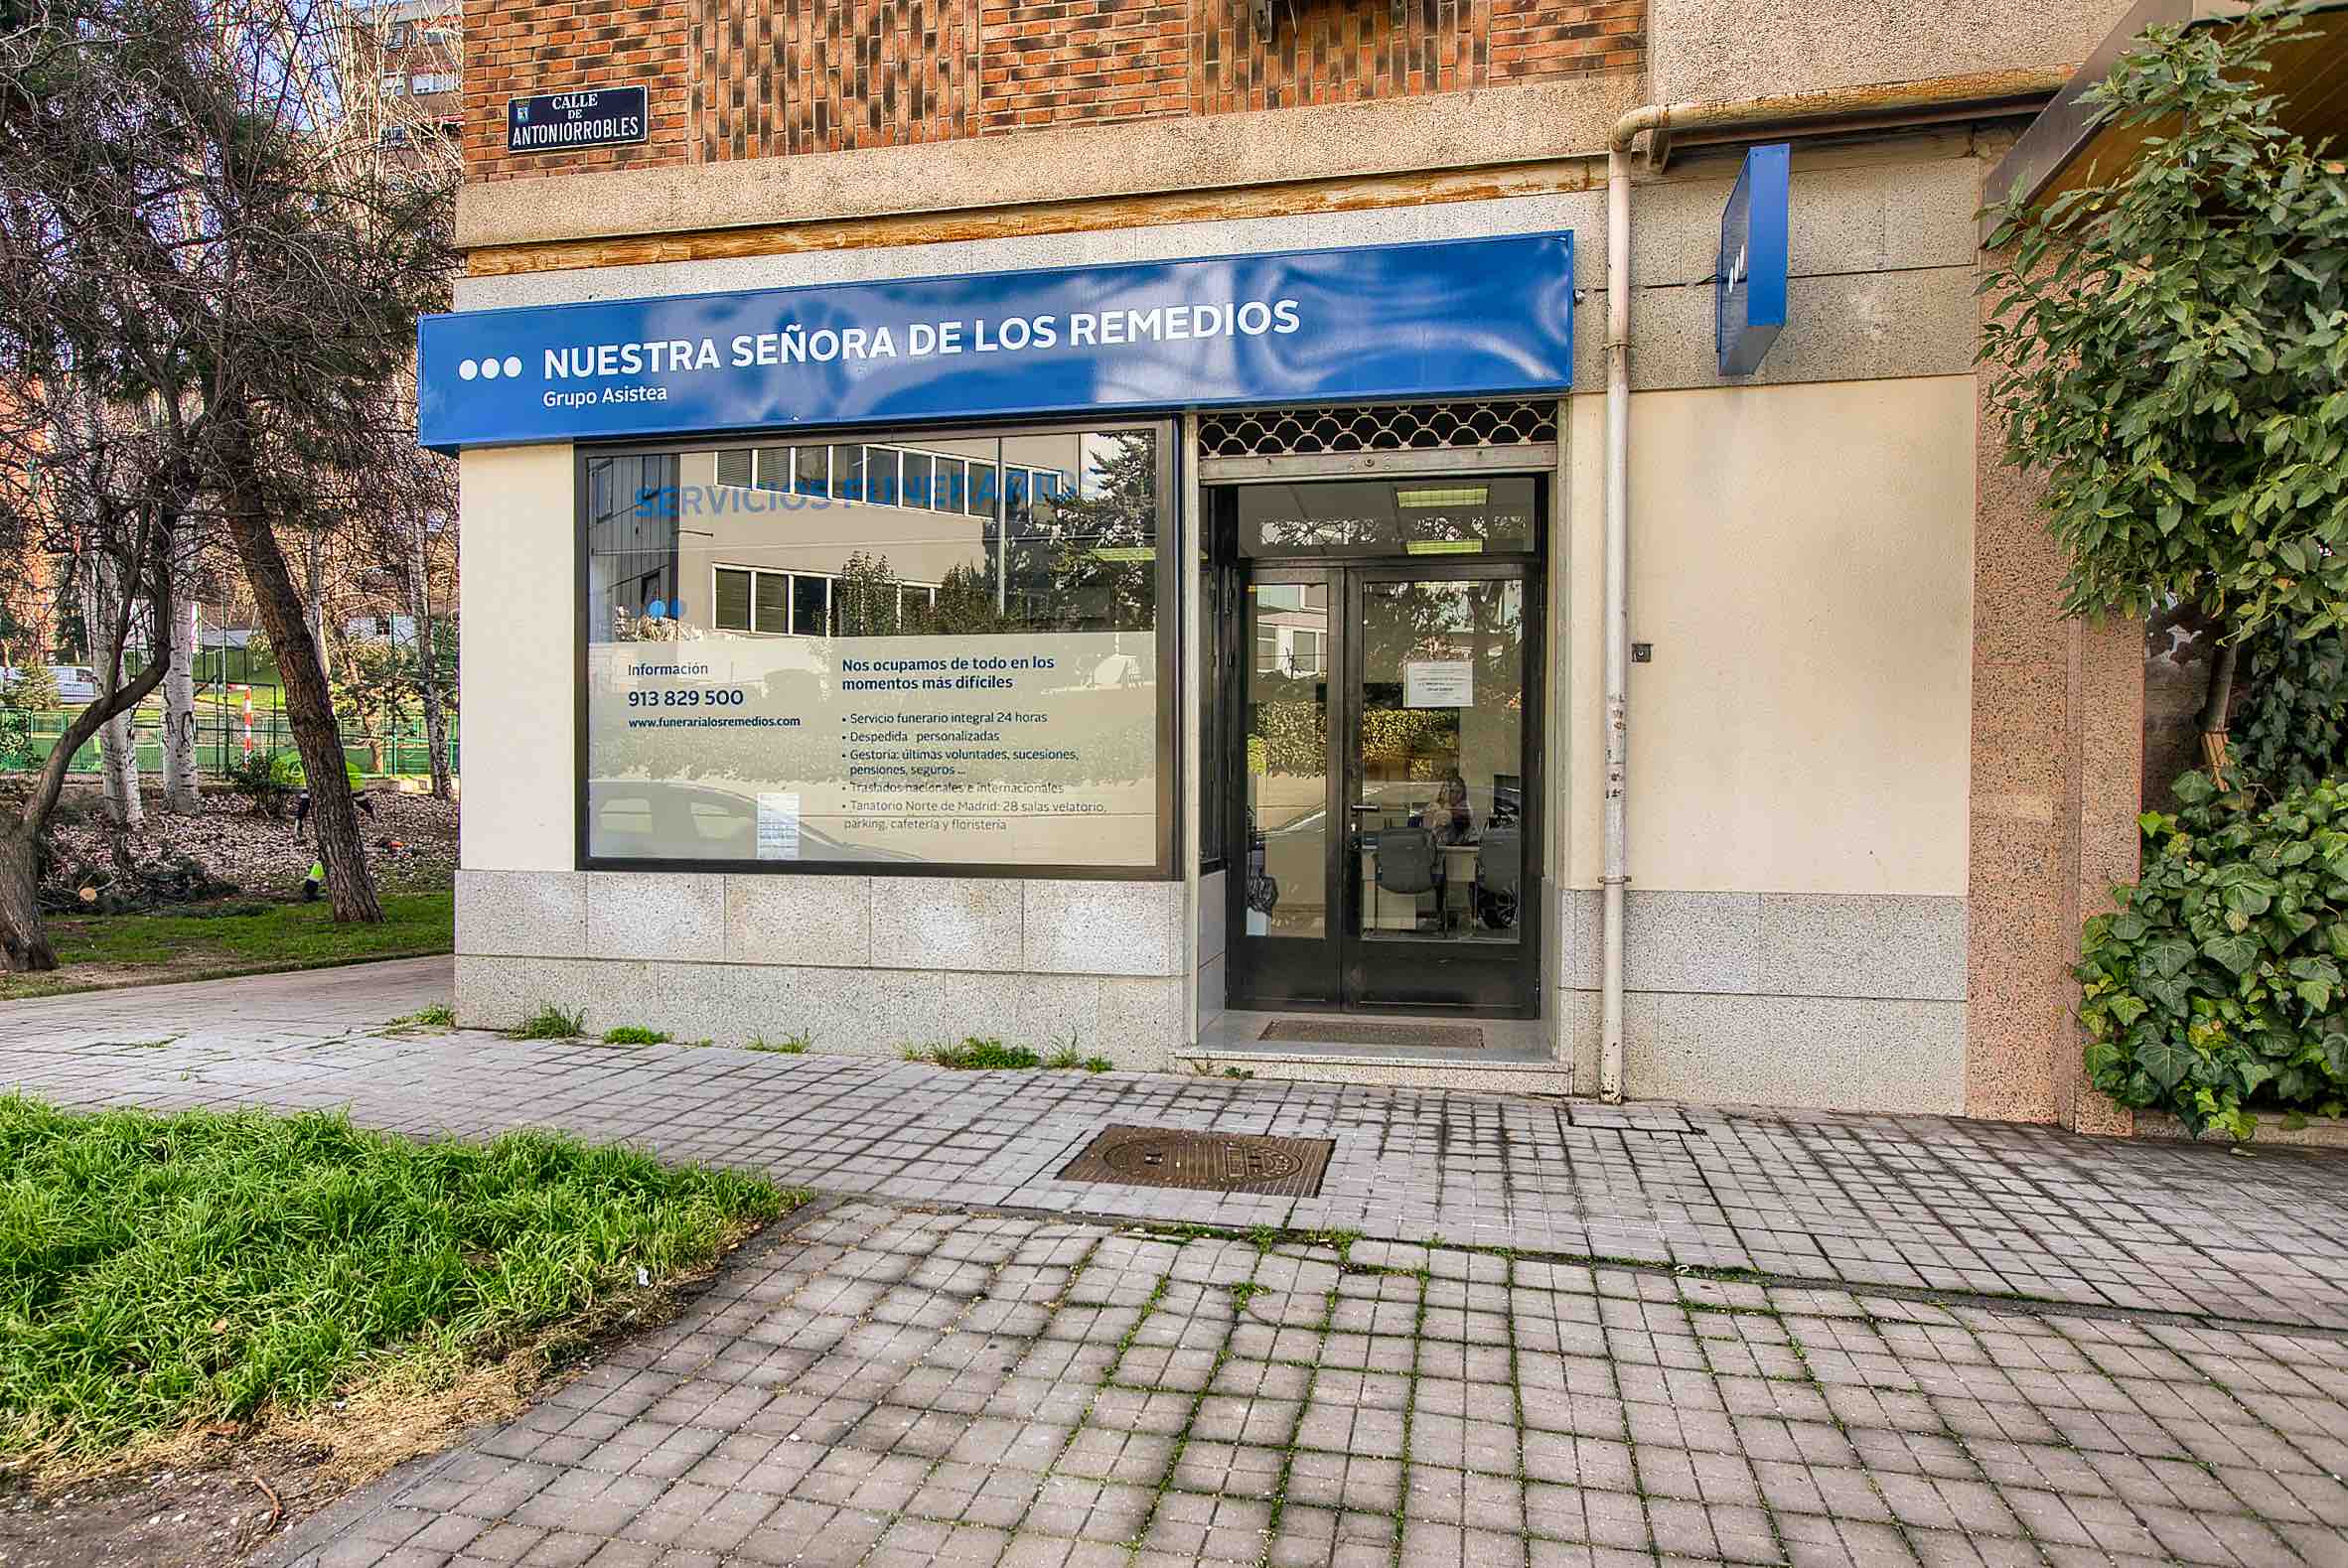 Oficina Funeraria del Hospital Ramón y Cajal